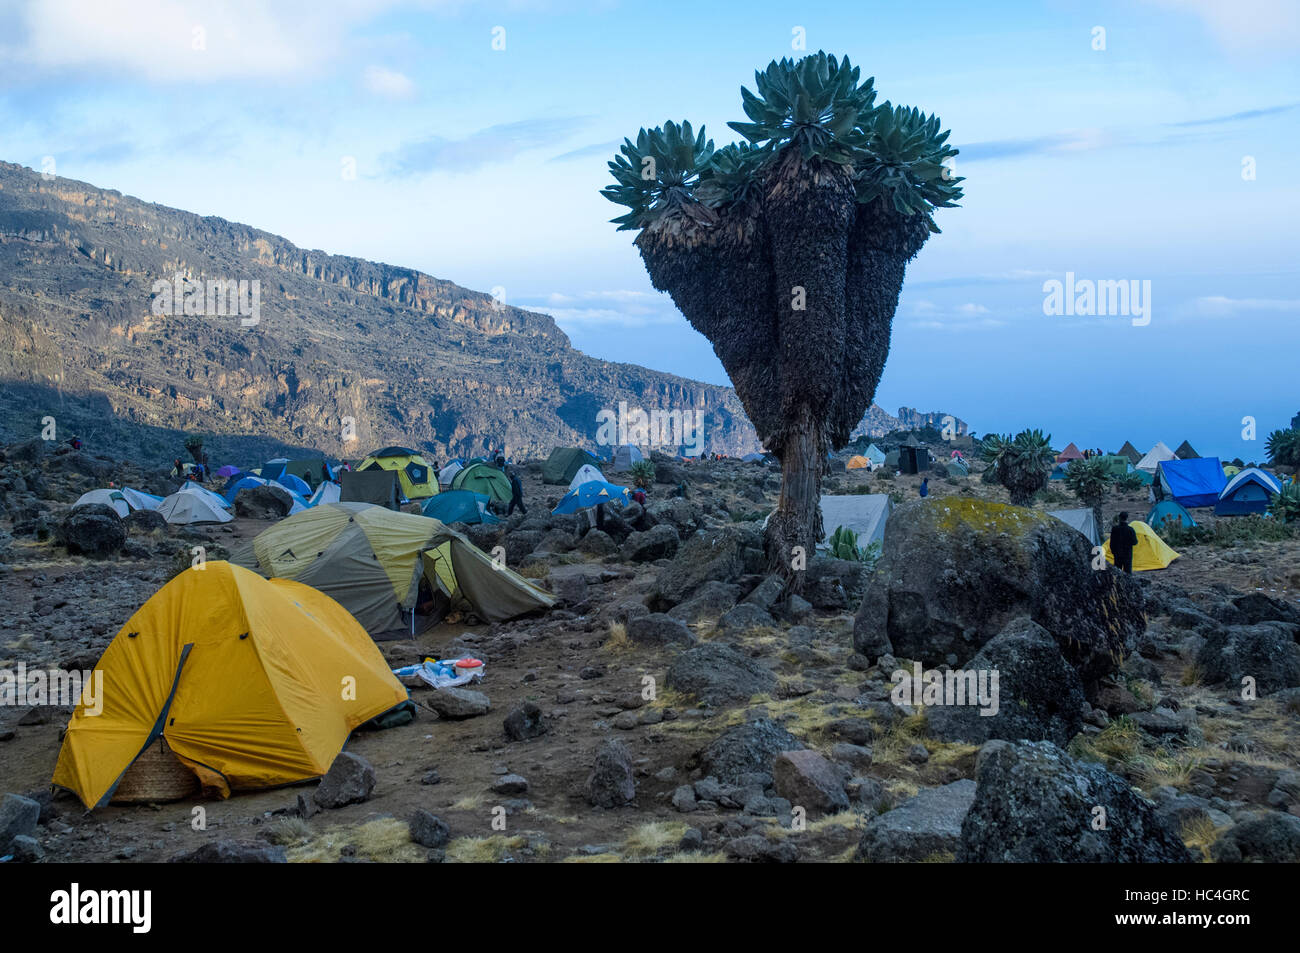 Baranco camp with Giant grounsel (Dendrosenecio kilimanjari), Machame Route, Kilimanjaro, Tanzania Stock Photo